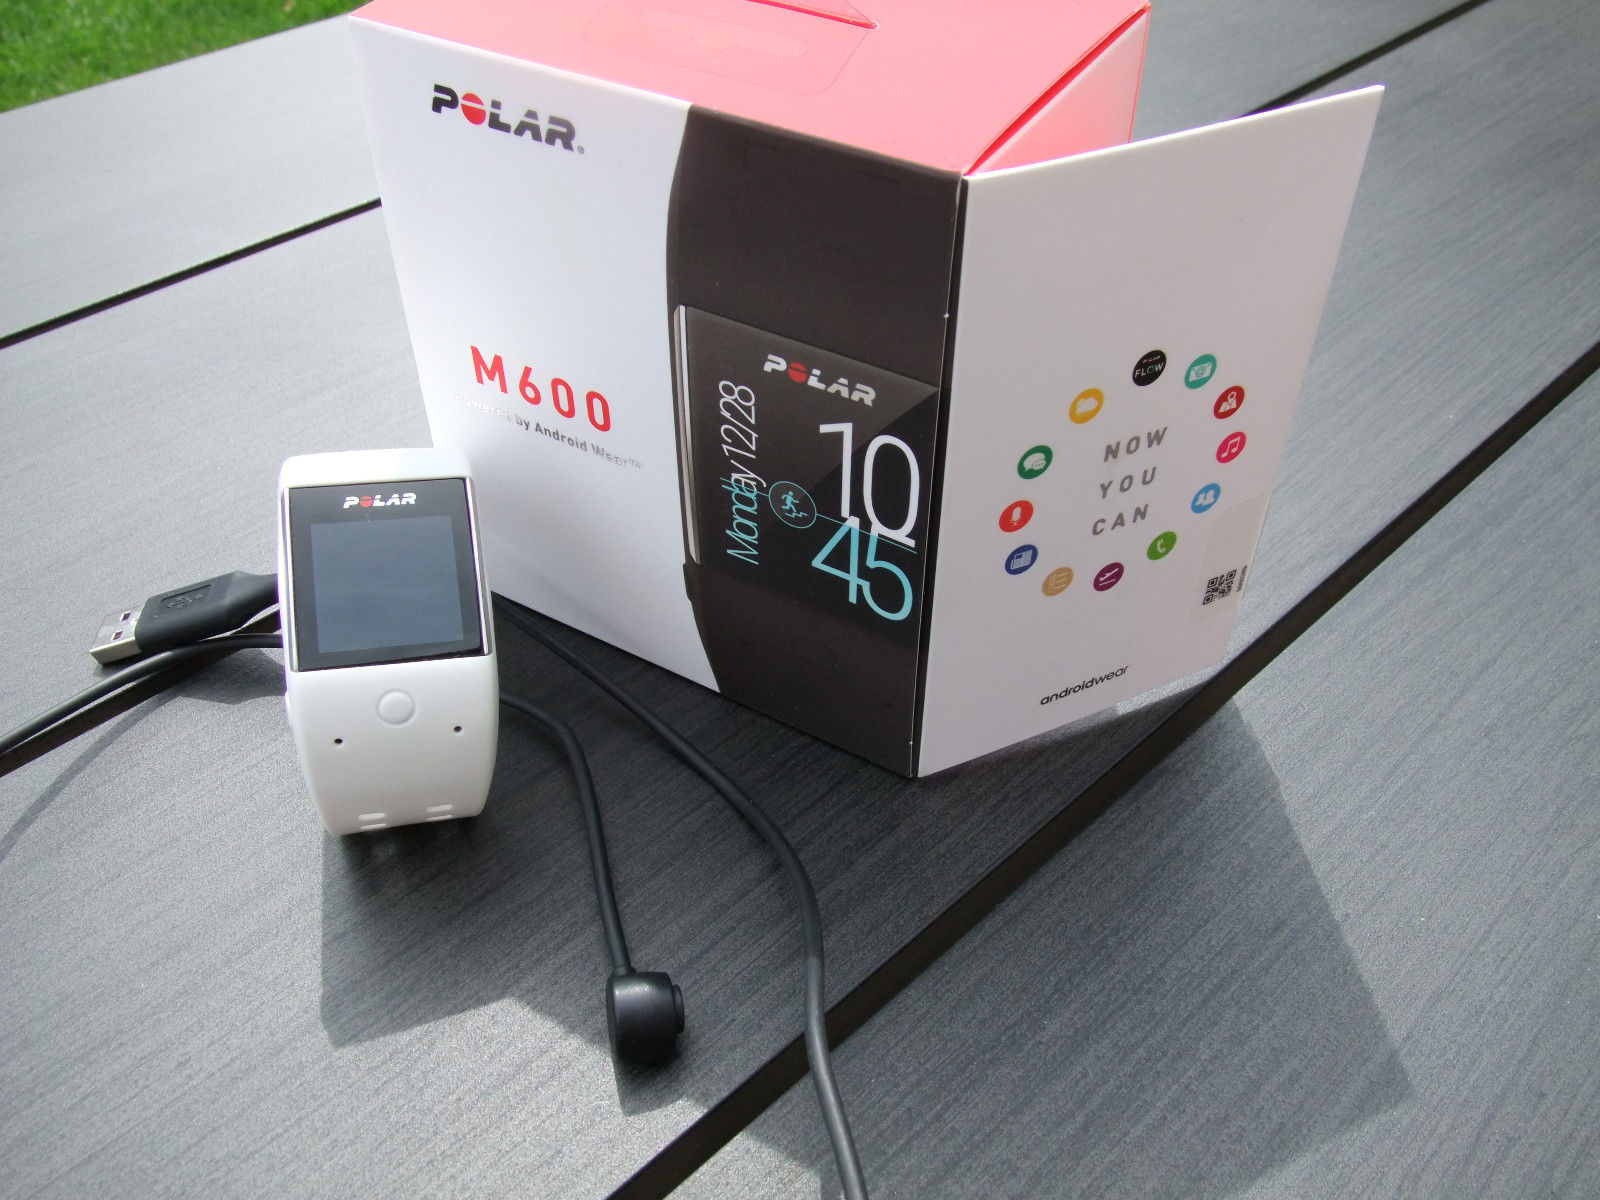 Polar M600 Fitness-Smartwatch mit GPS Android wasserdicht Pulsmesser Fitnessuhr